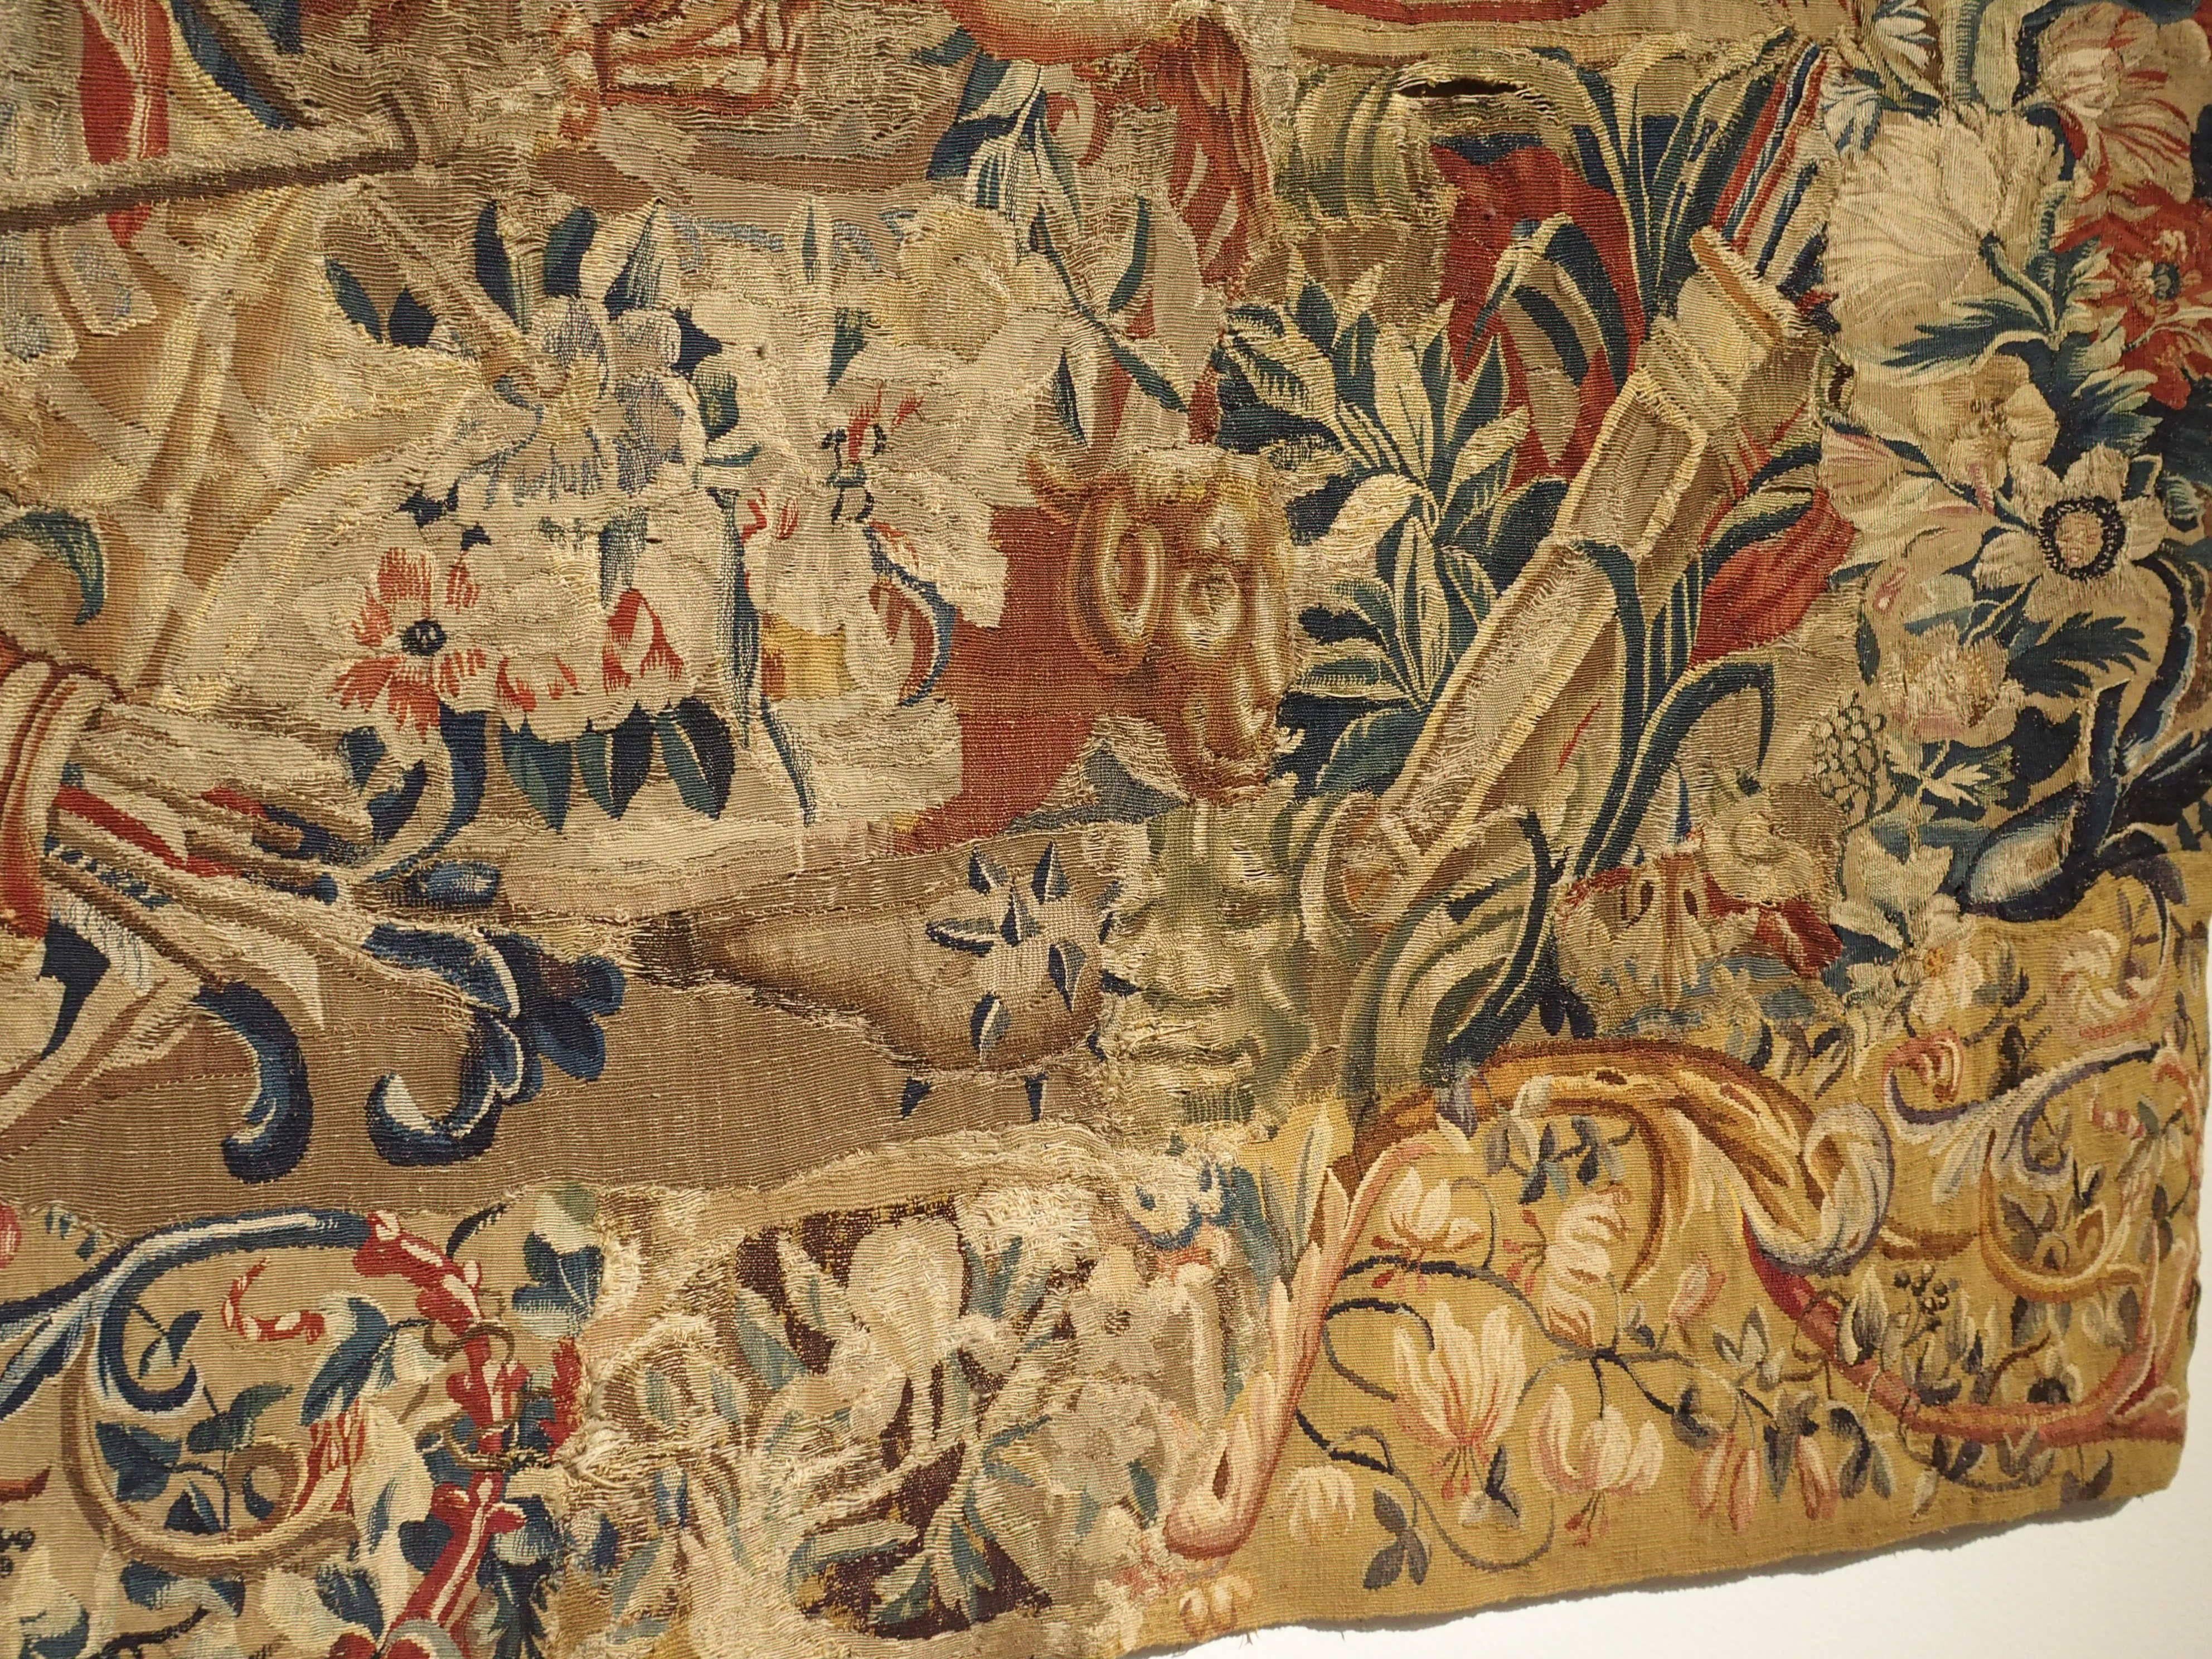 Es handelt sich um ein großes, horizontales Fragment eines Beauvais-Wandteppichs aus dem späten 17. Die Gobelinmanufaktur von Beauvais war eine der bekanntesten Gobelinwerkstätten Frankreichs. Beauvais war ein privates Unternehmen, das prächtige